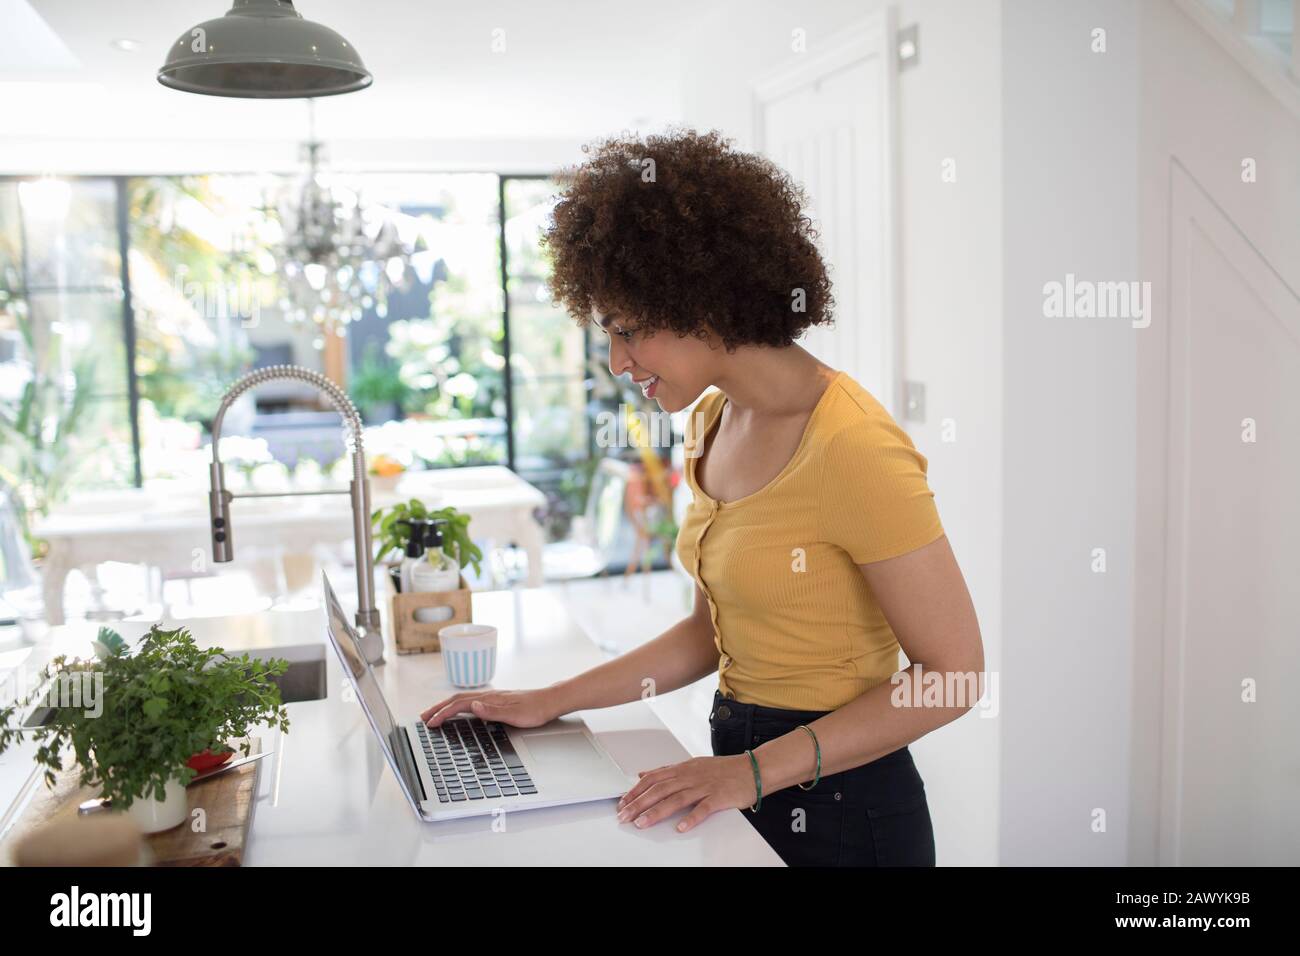 Jeune entrepreneur féminin travaillant sur un ordinateur portable dans la cuisine Banque D'Images